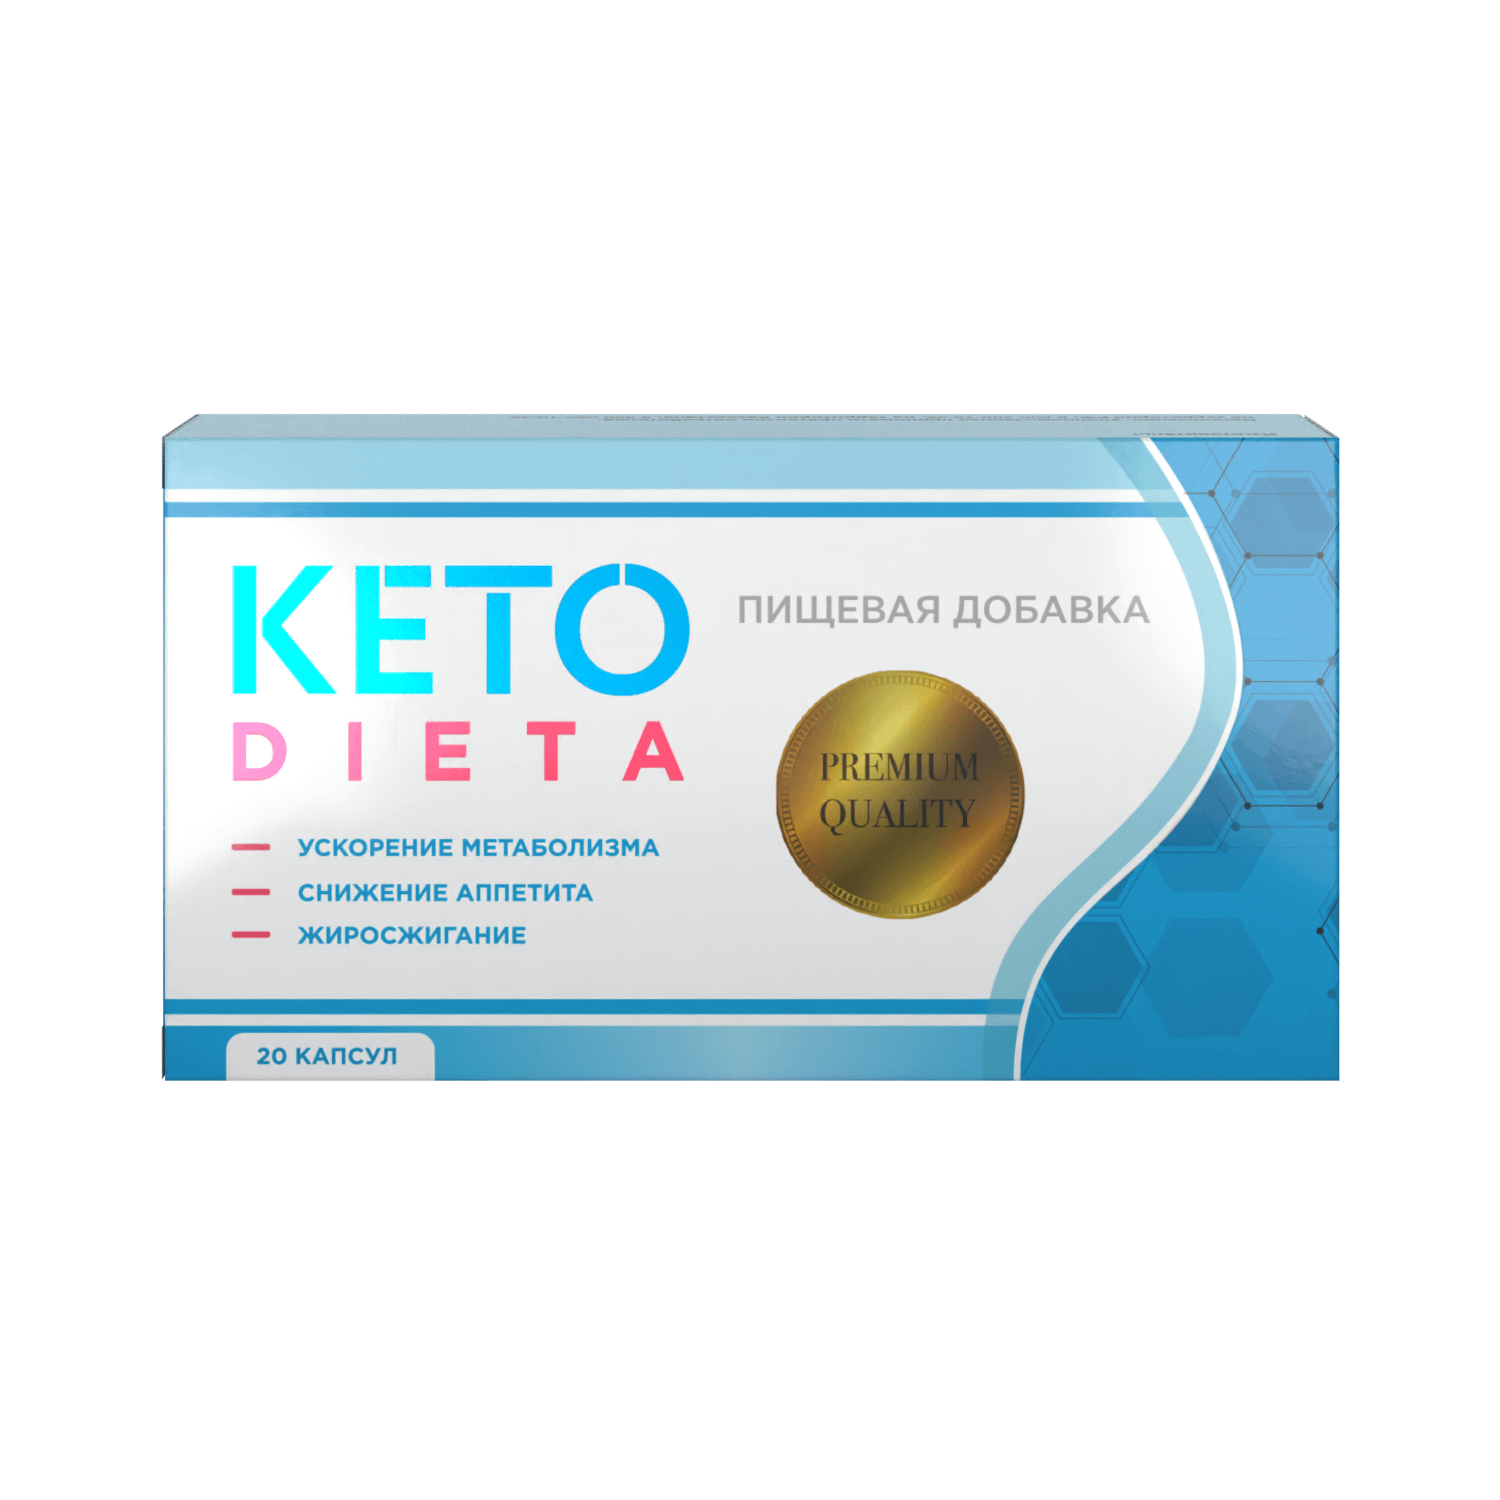 KETODIETA - Революционный способ похудения на основе кетогенной диеты